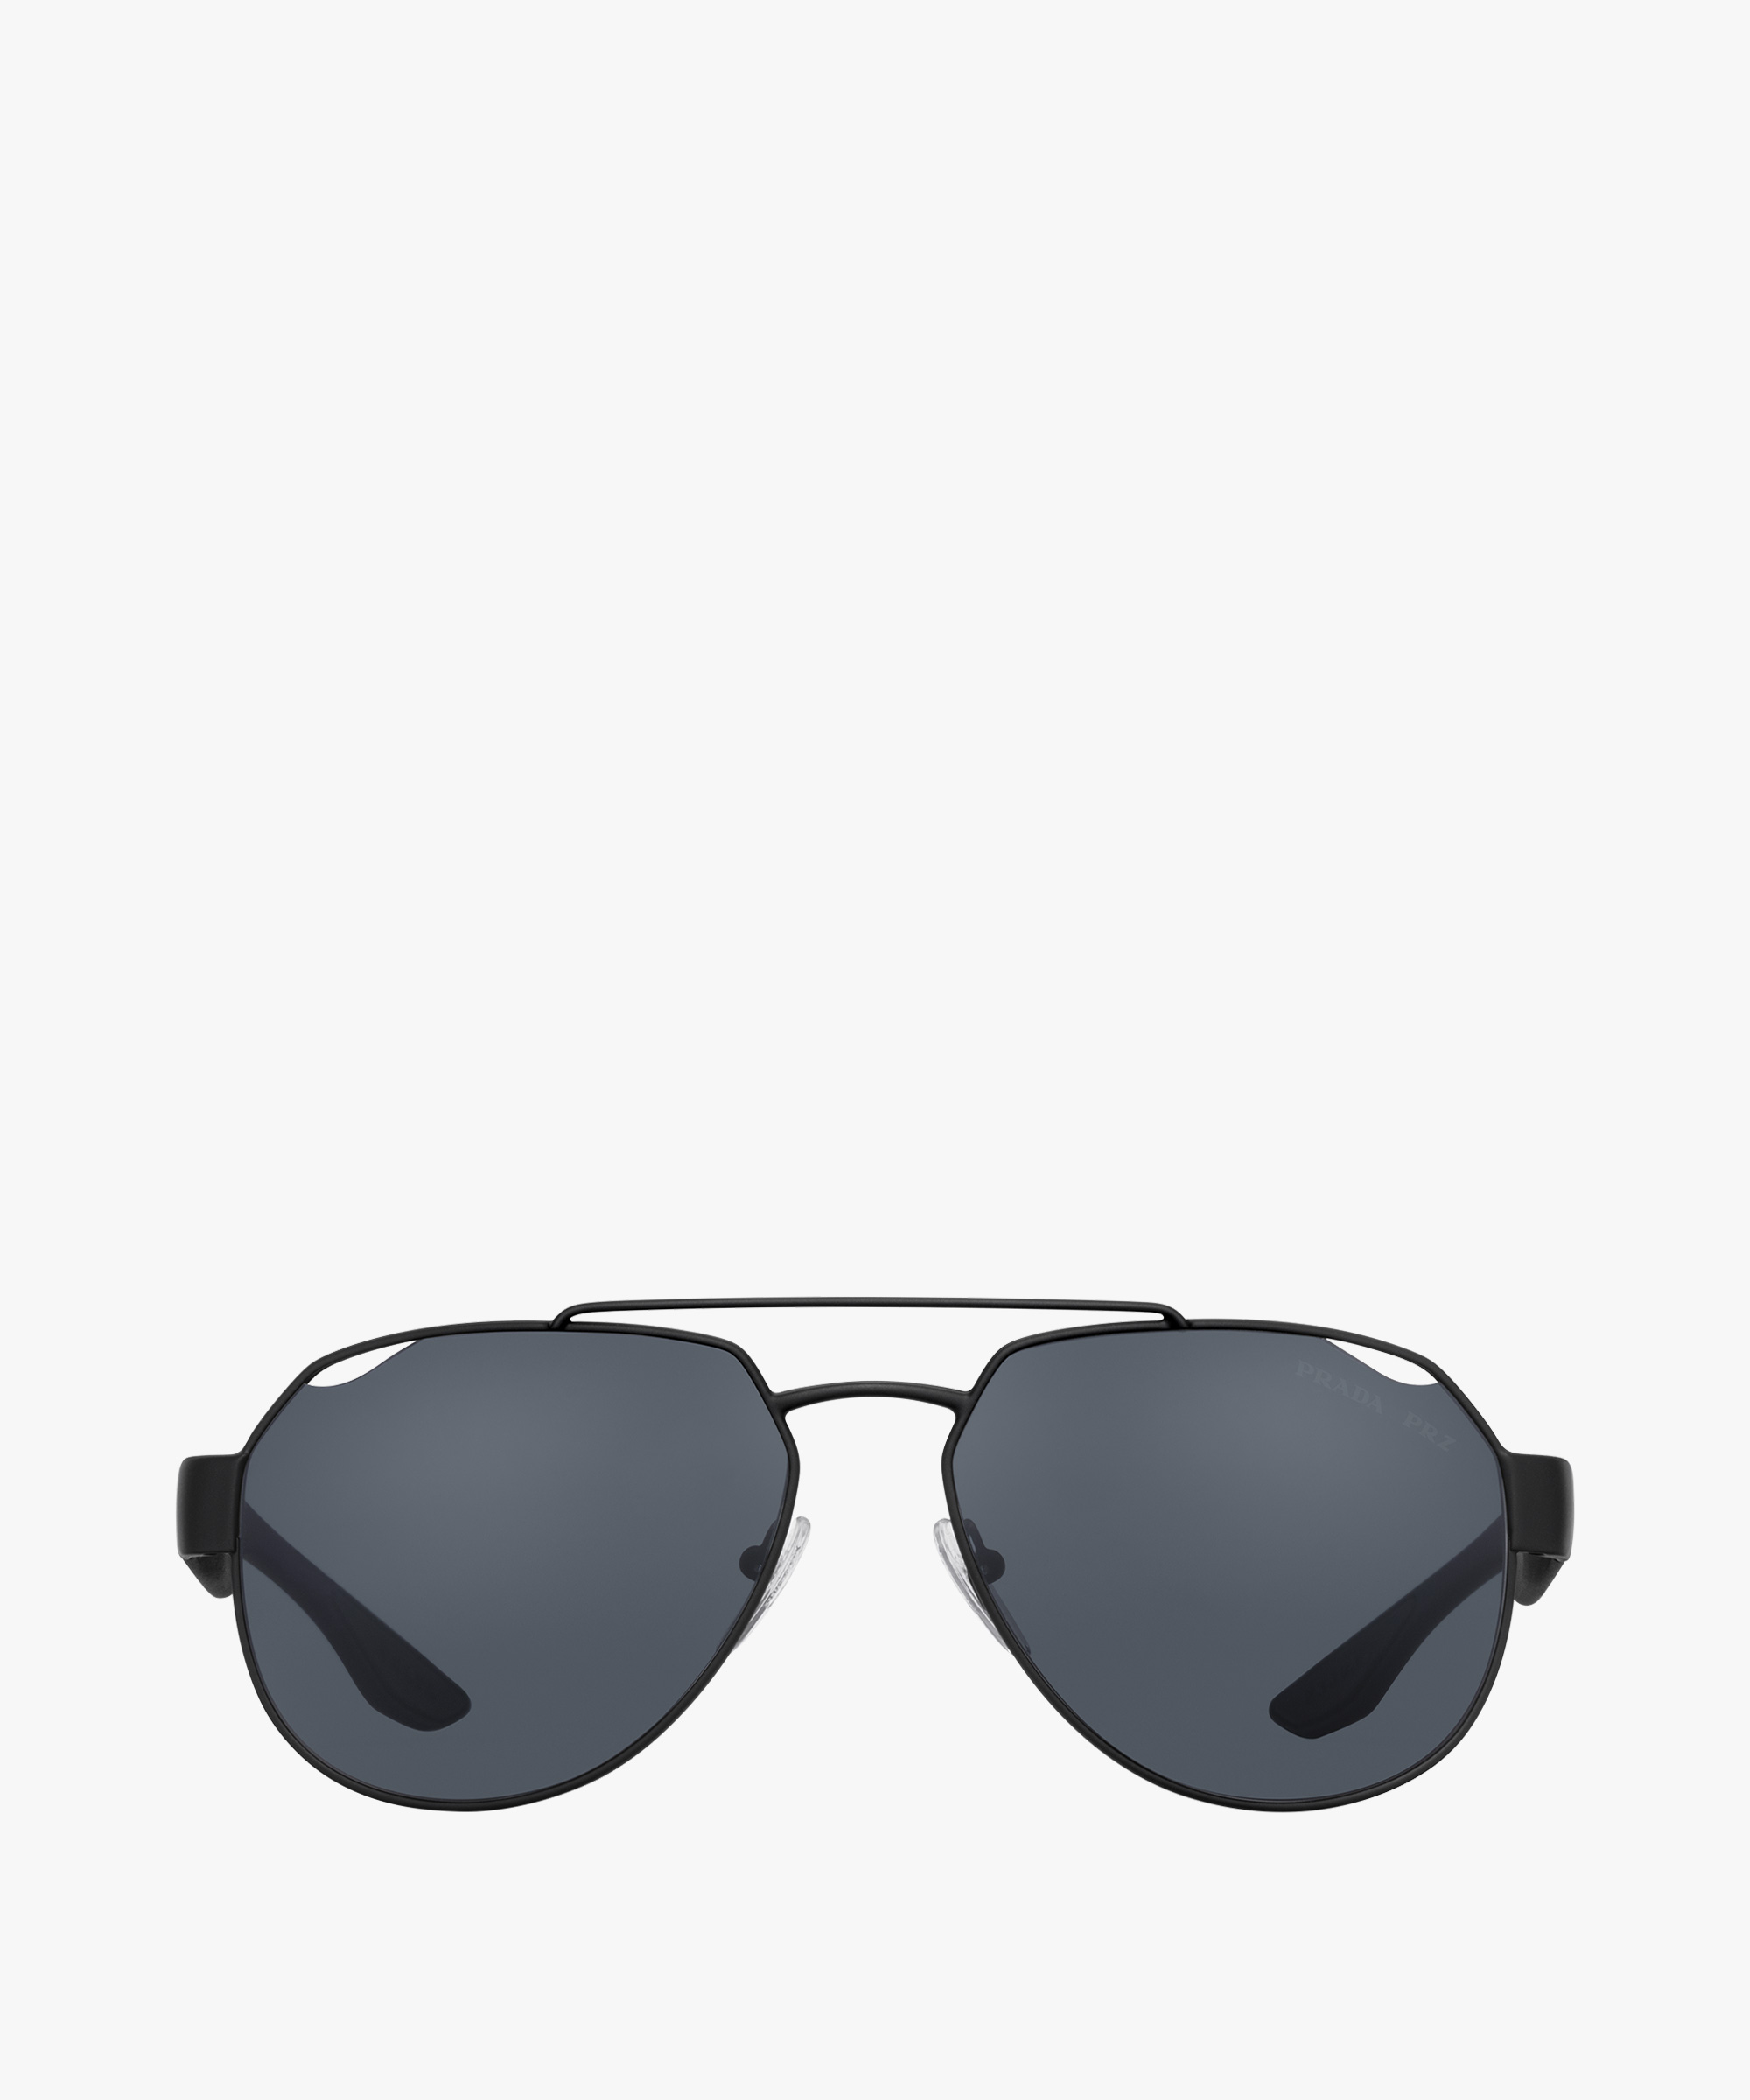 prada original sunglasses